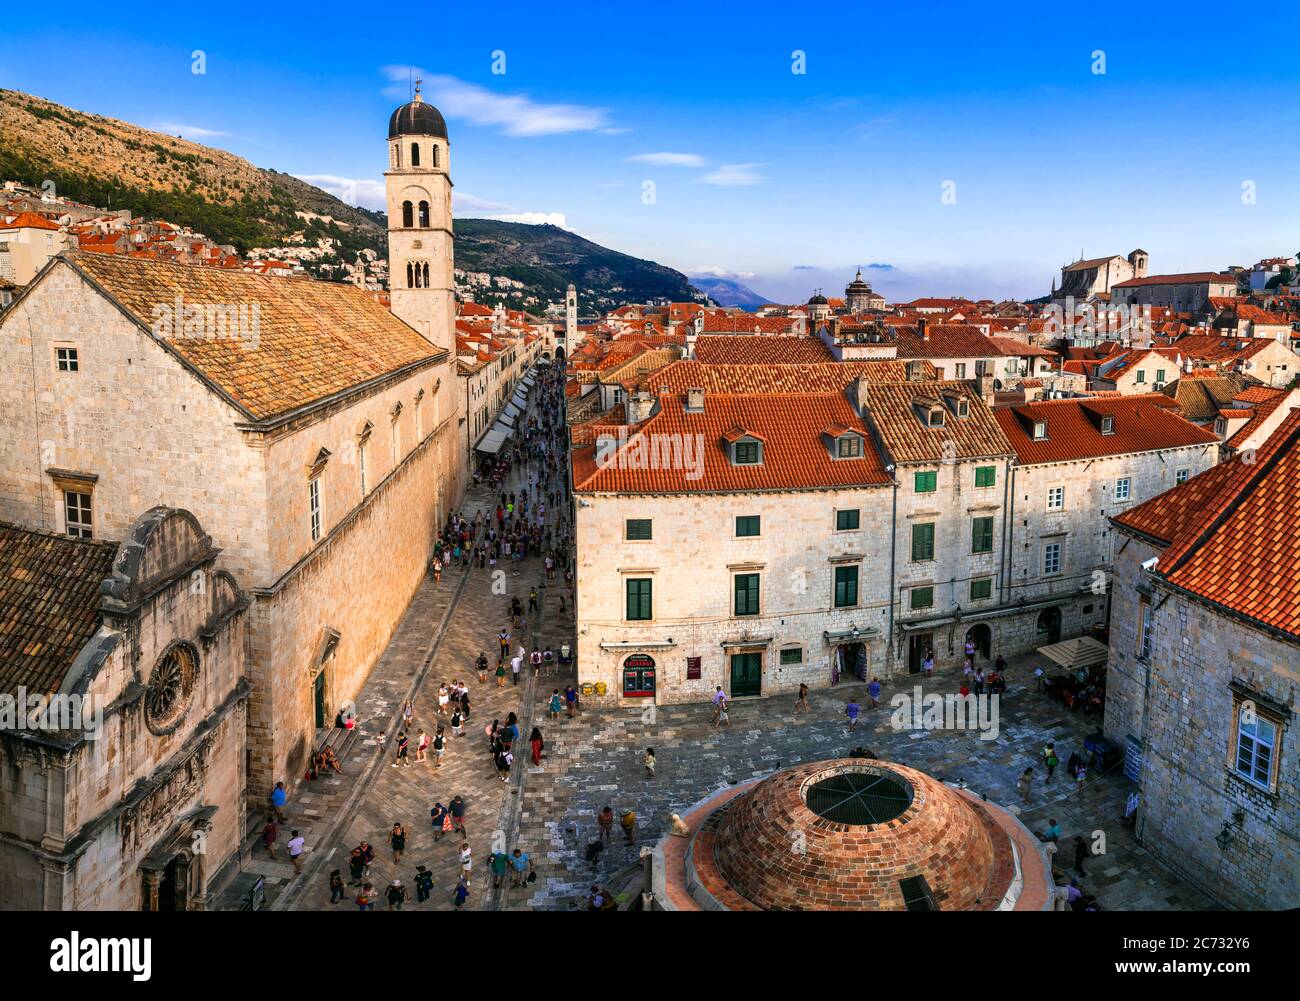 Croatie voyage. Dubrovnik. Vue depuis les remparts de la ville dans le centre historique de la vieille ville. 18.09.2019 Banque D'Images